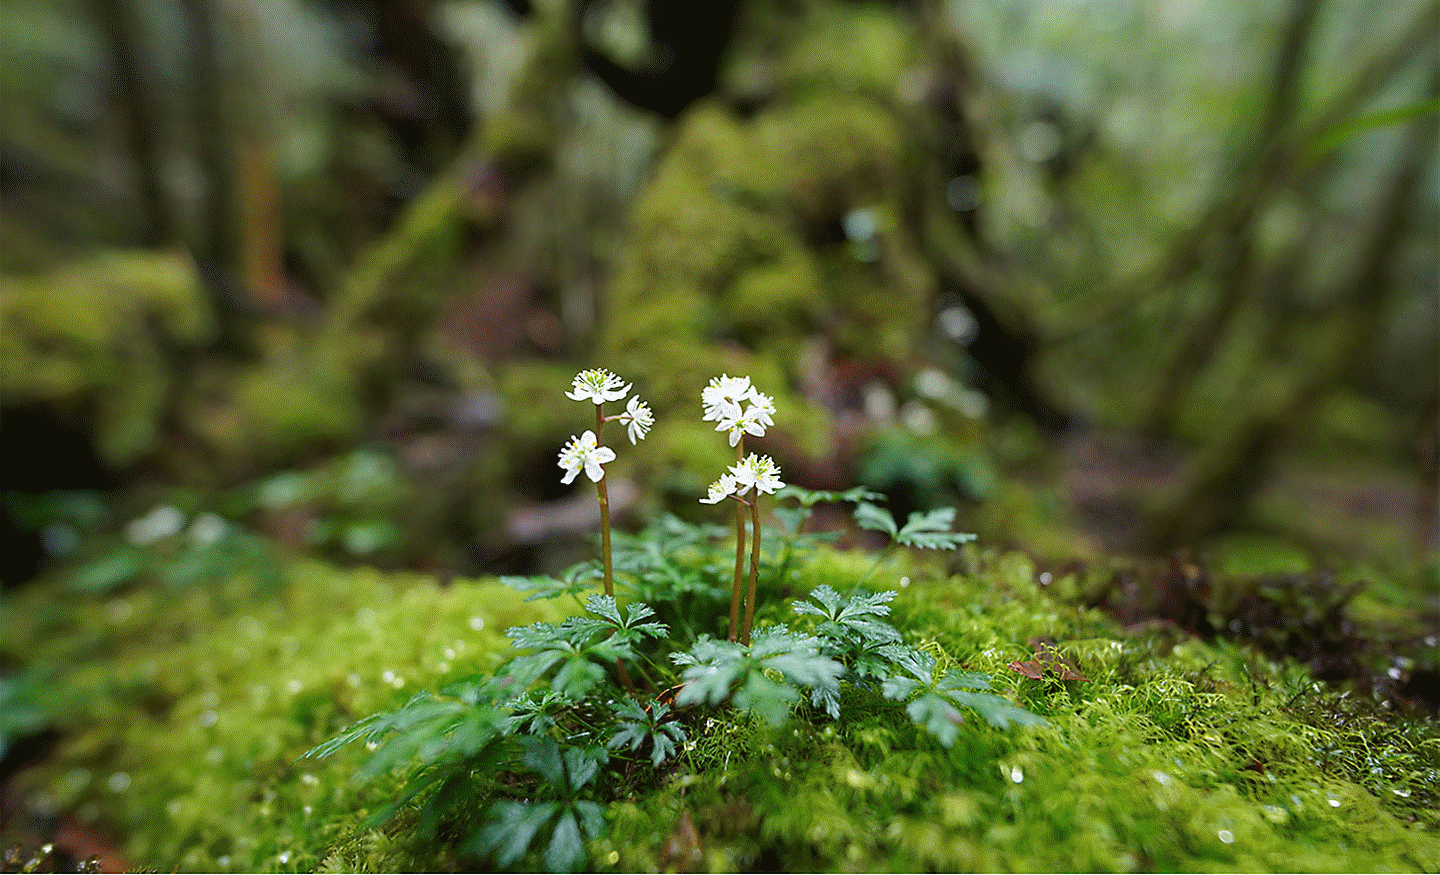 Ön ve arkada büyük bir bulanık alan ile birlikte ormanda bulunan bir kayadaki küçük bir çiçeğin netlenmiş görüntüsü